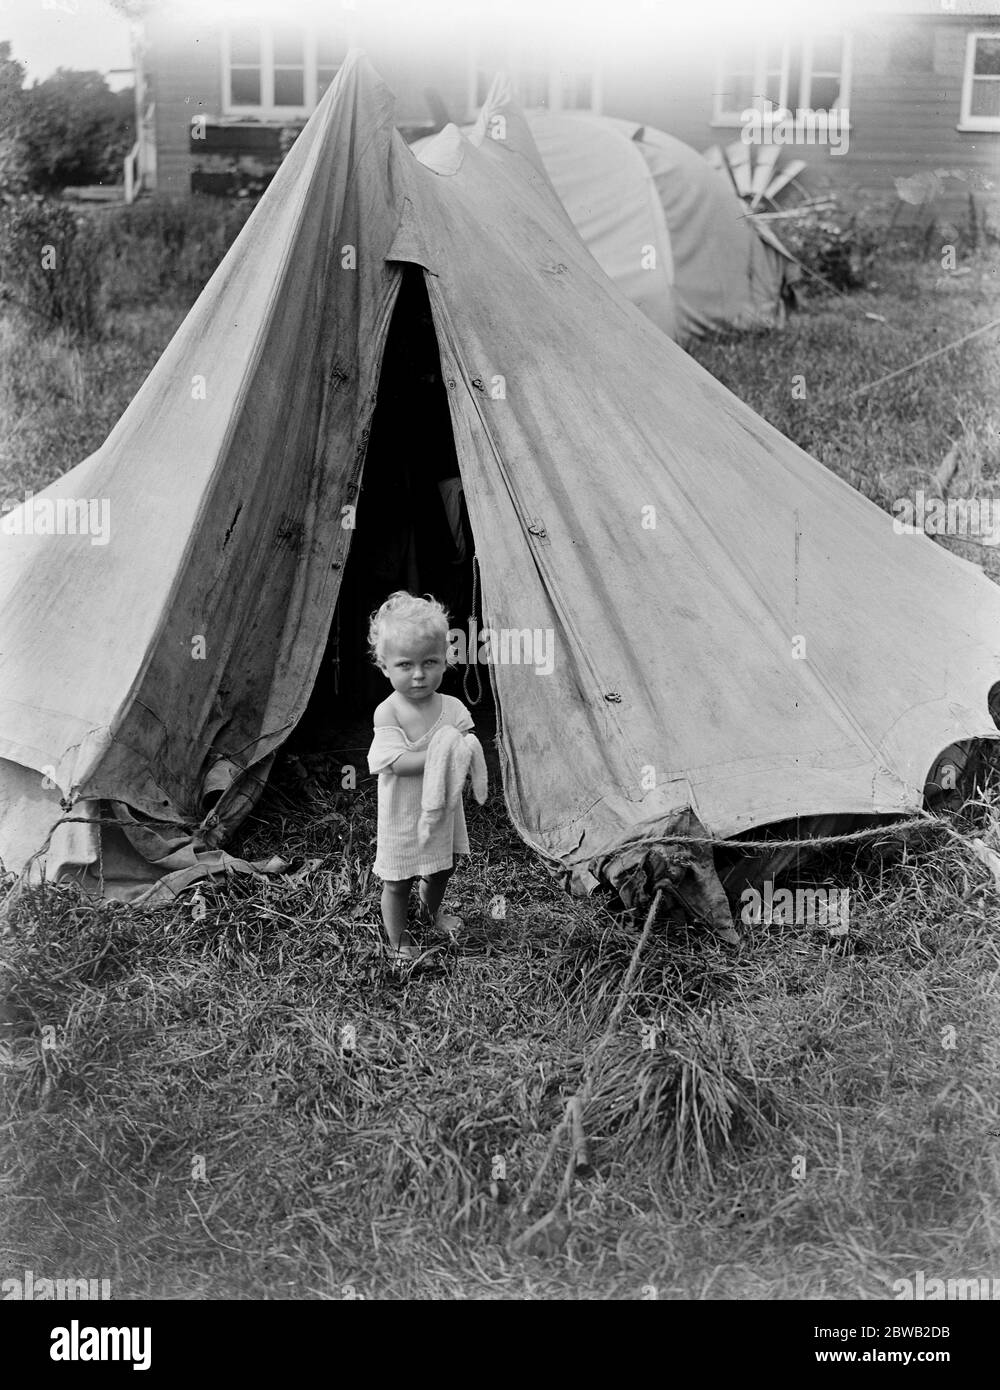 Deux familles incapables de trouver un logement à Londres, ont loué une caravane et des tentes et sont campées sur la rive de la rivière à Staines 13 août 1919 Banque D'Images